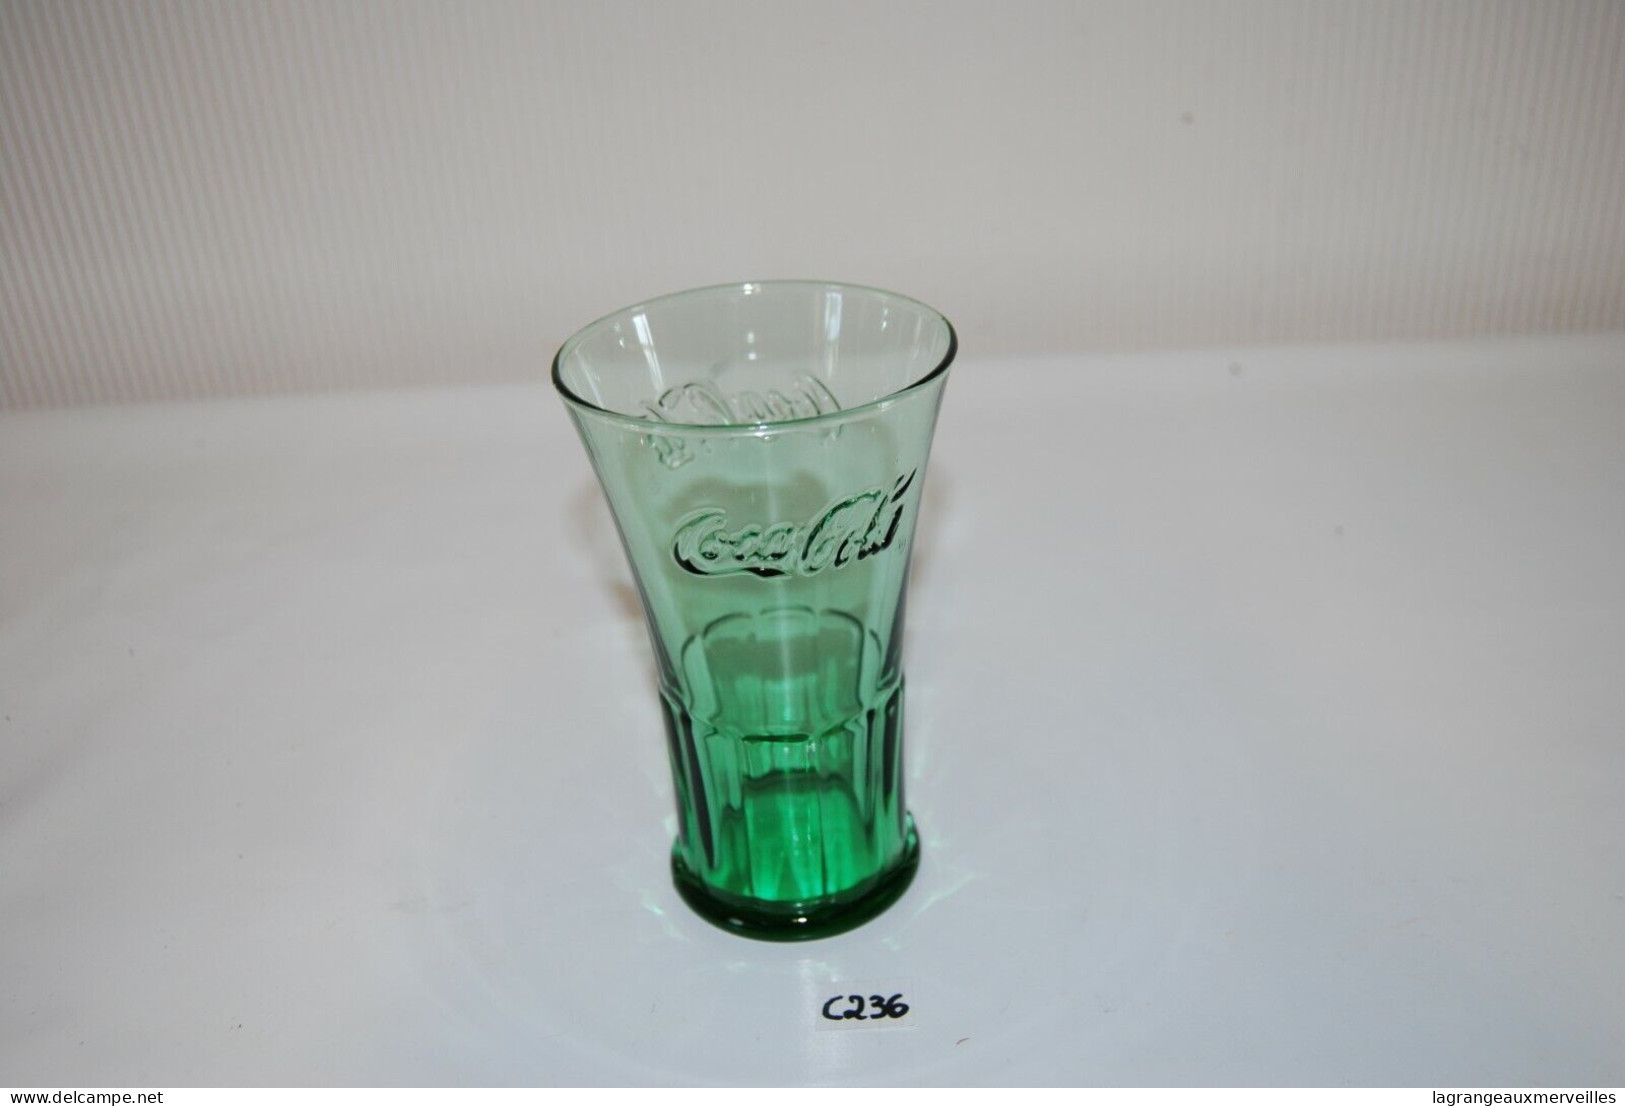 C236 Coca Cola - Ancien Verre De Collection - Glas Collector - Tasses, Gobelets, Verres